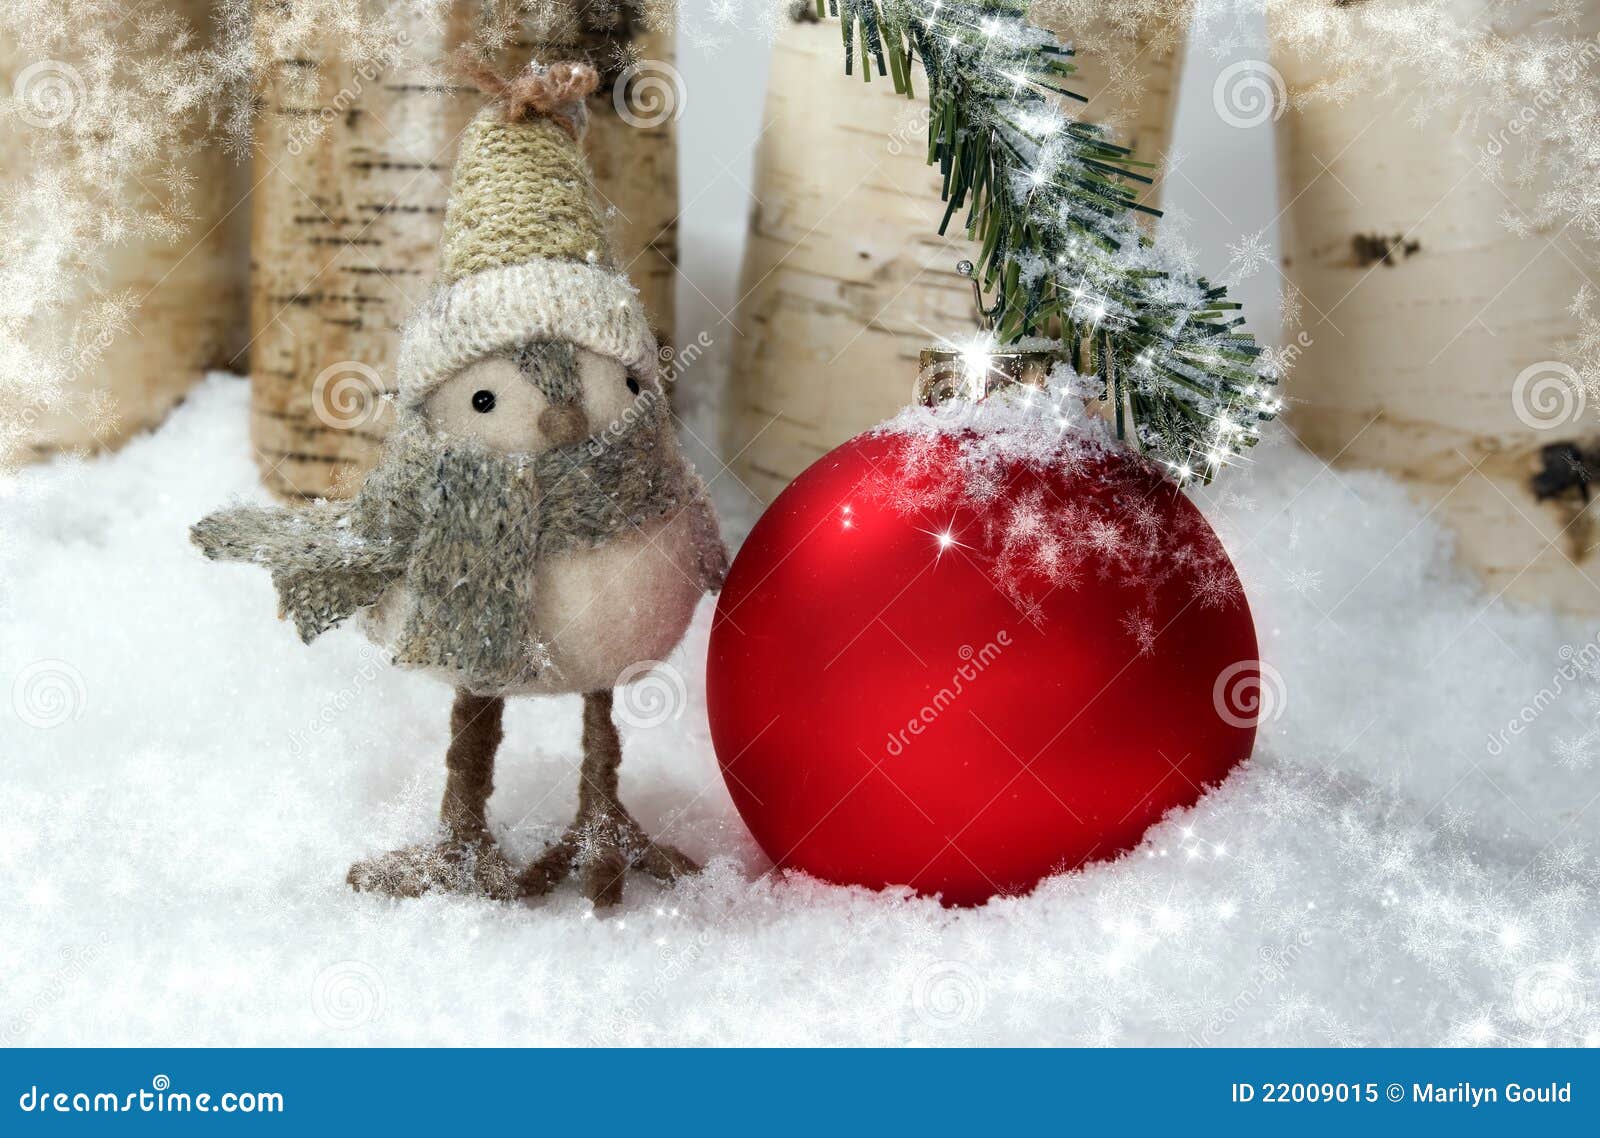 whimsical christmas bird